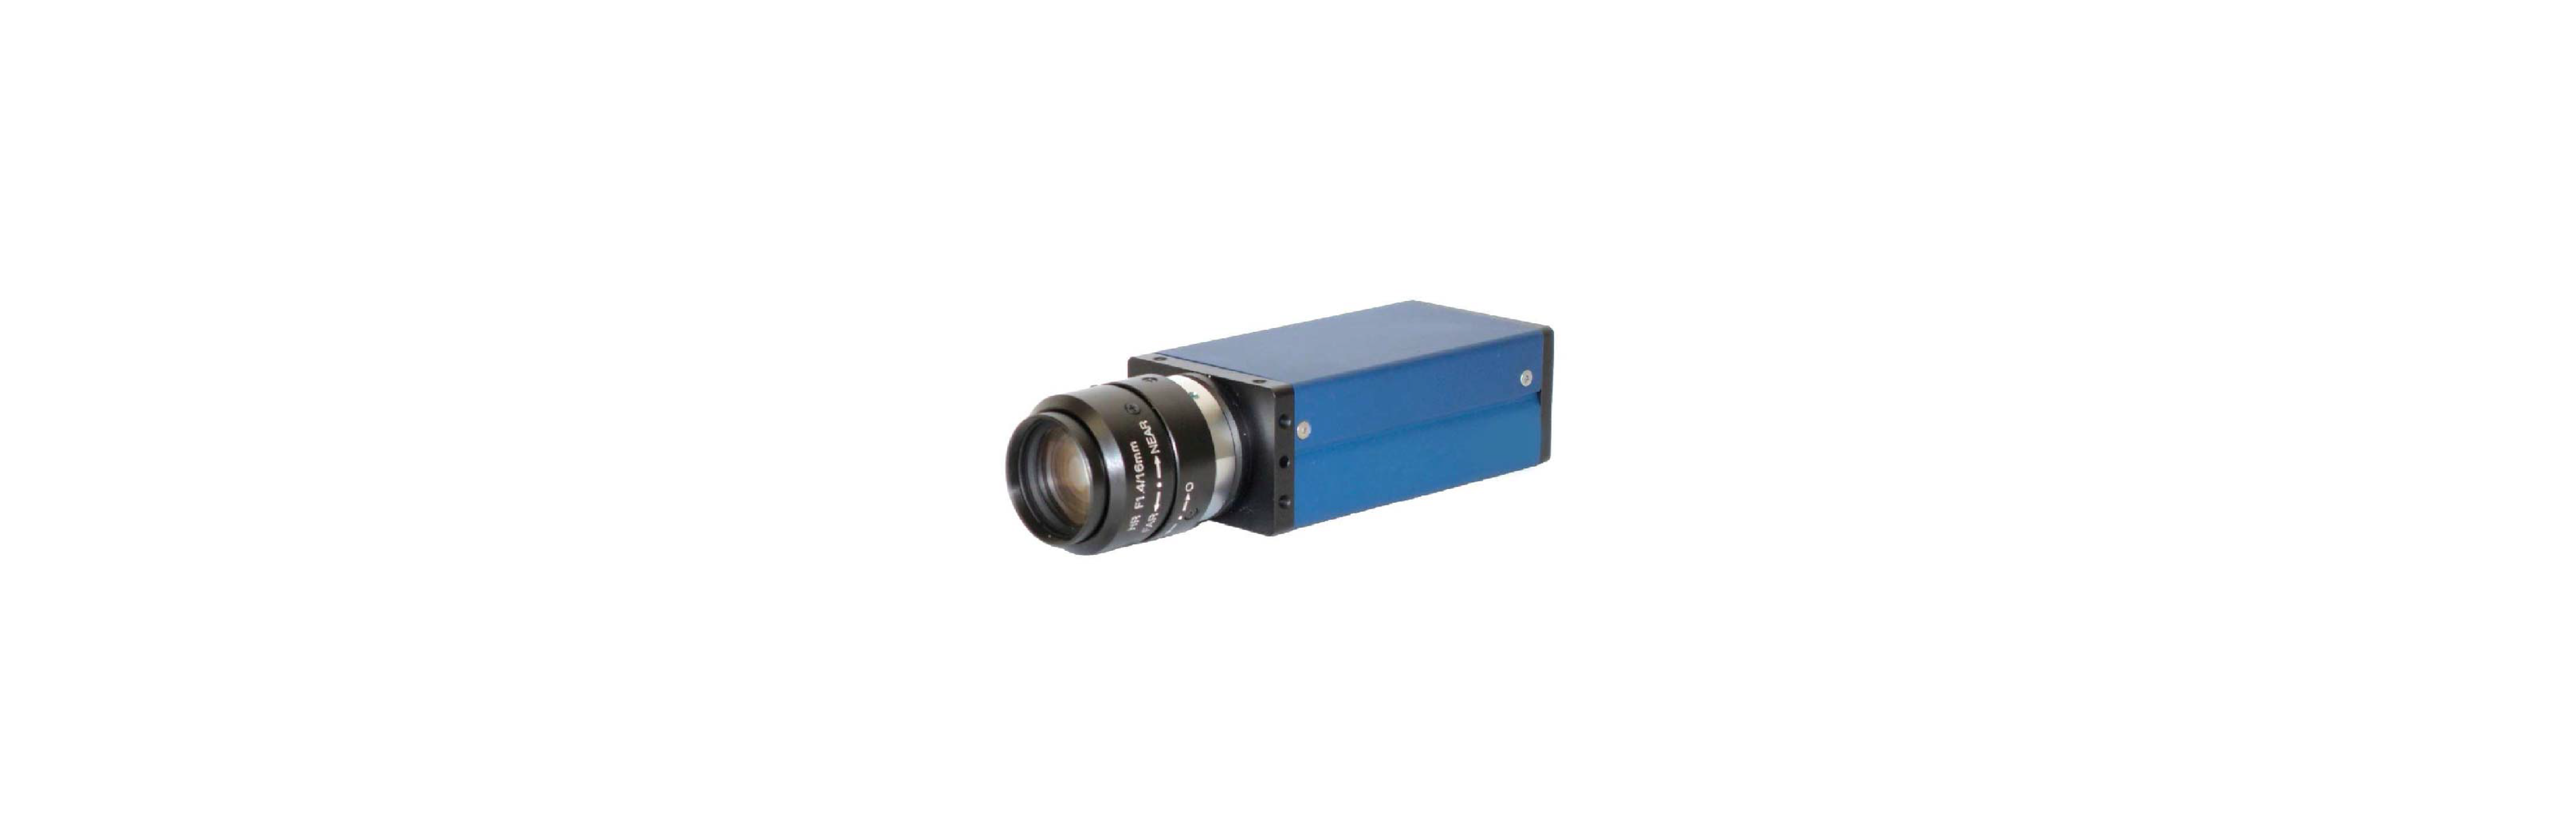 Laser Vibrometer Infrared Camera